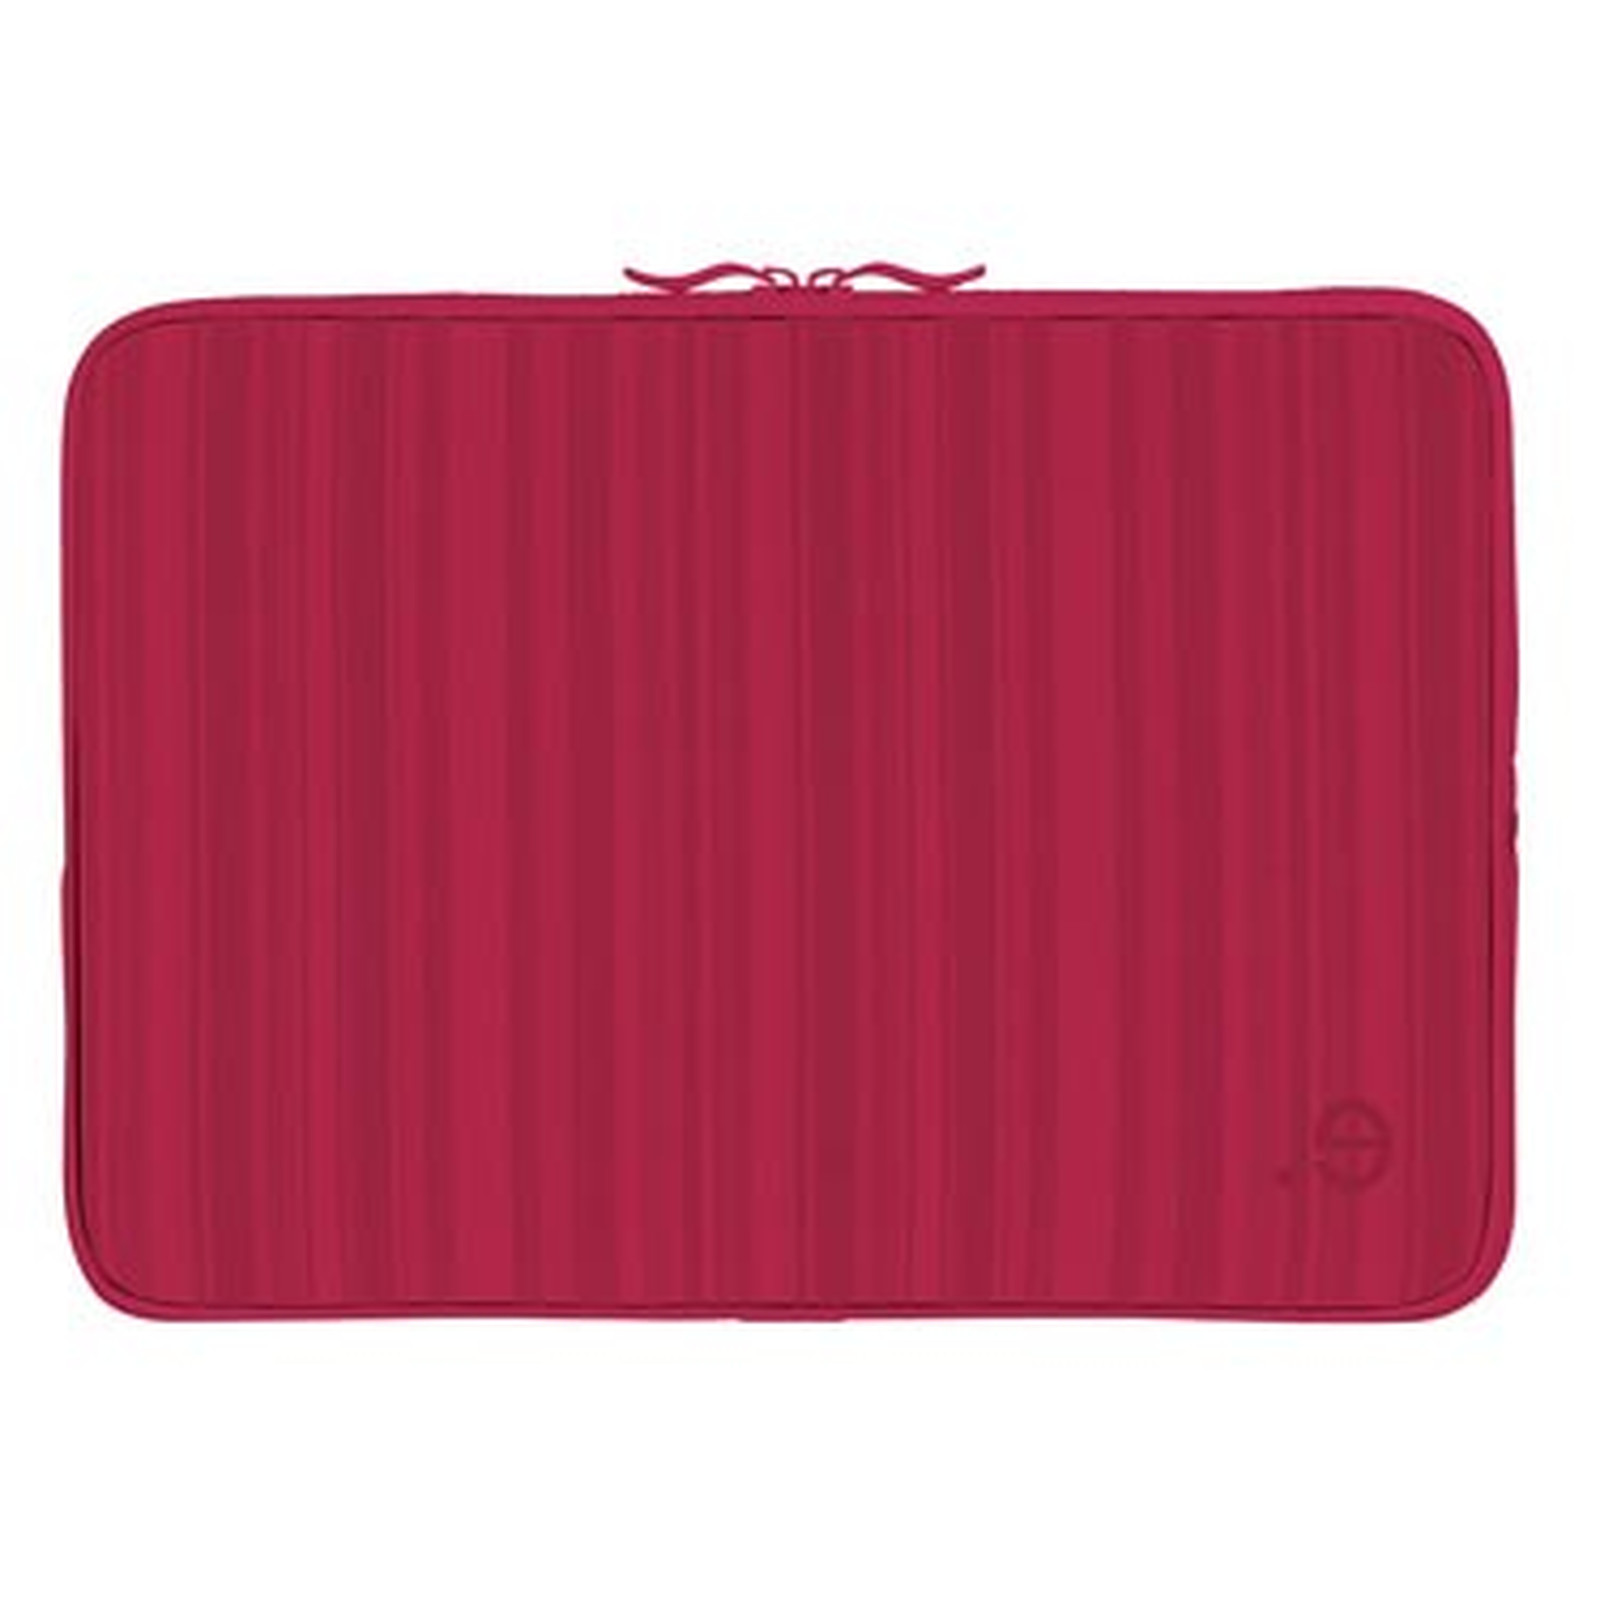 BE.EZ House Housse LA robe Macbook Pro 15 Allure Red Kiss - Accessoires Apple be.ez